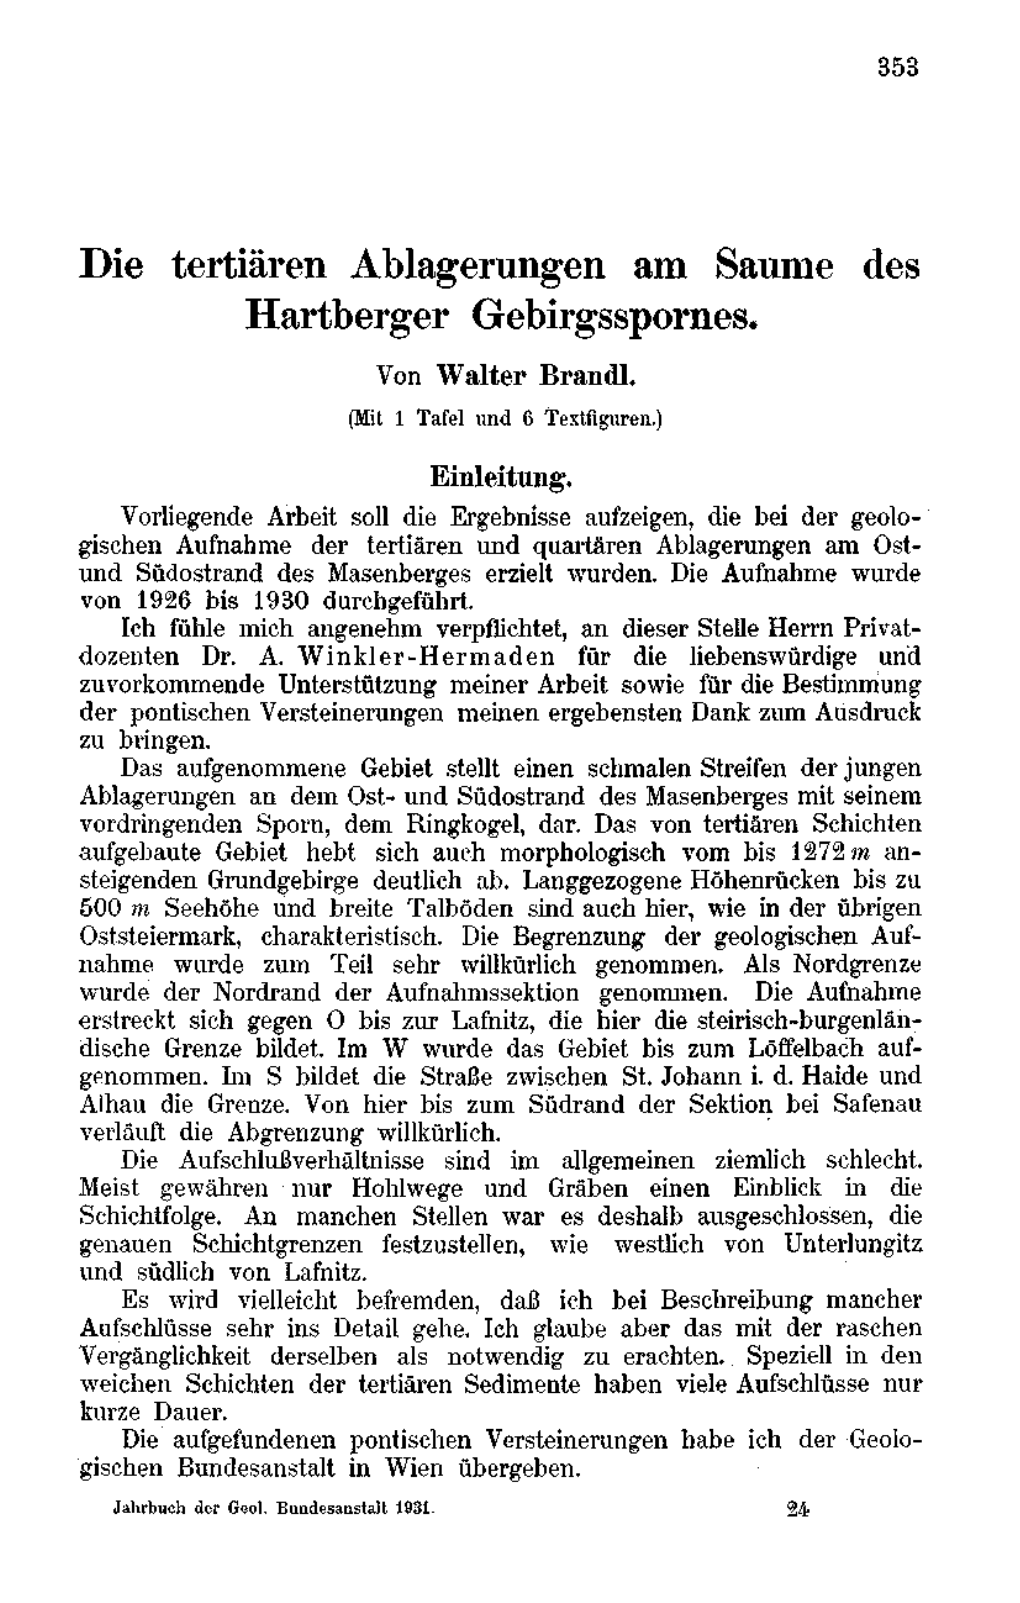 Die Tertiären Ablagerungen Am Saume Des Hartberger Gebirgsspornes. Von Walter Brandl